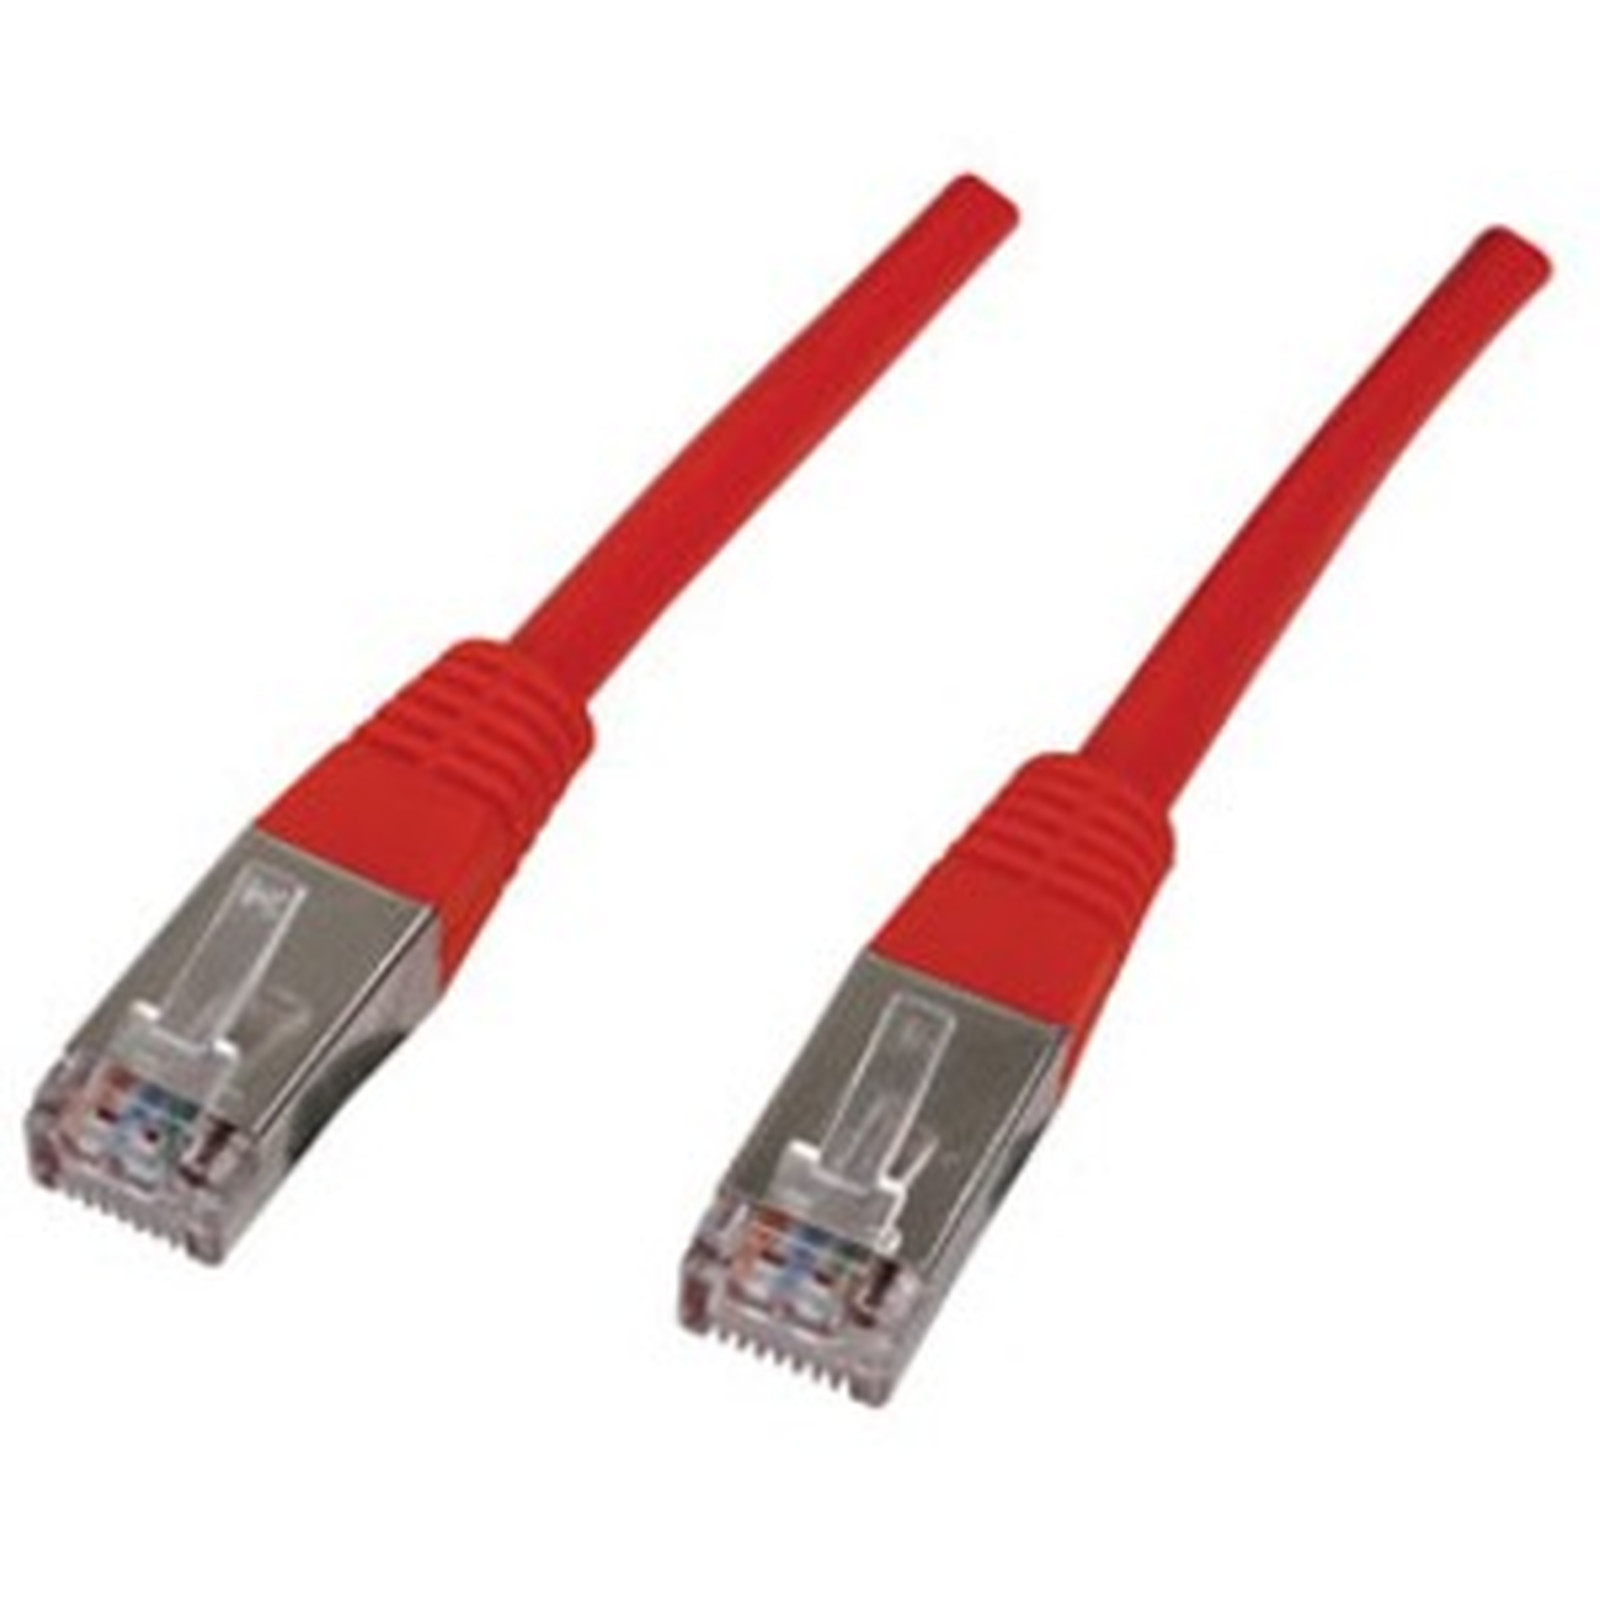 Cable RJ45 categorie 6 F/UTP 0.15 m (Rouge) - Cable RJ45 Generique